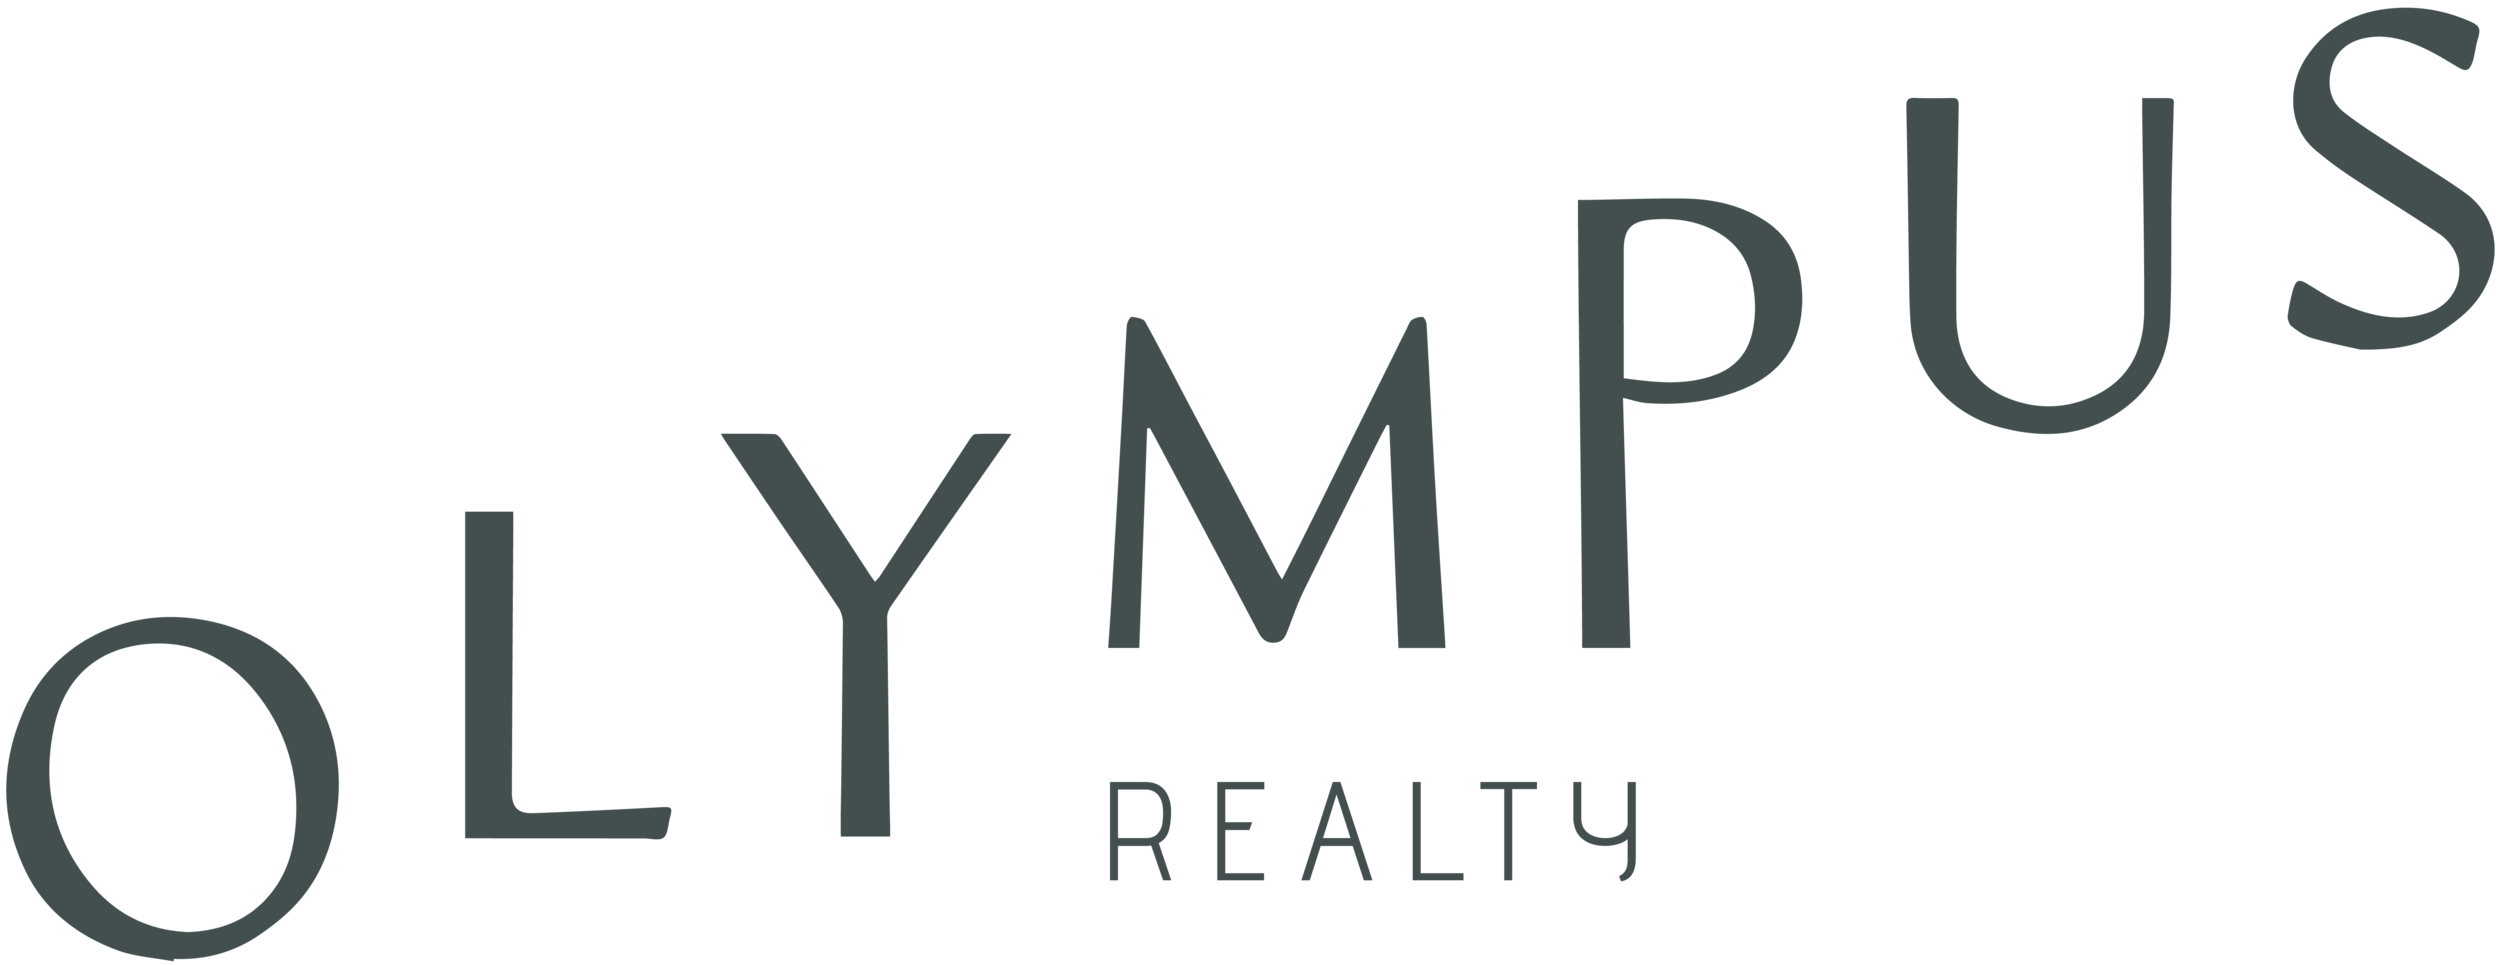 Olympus Realty